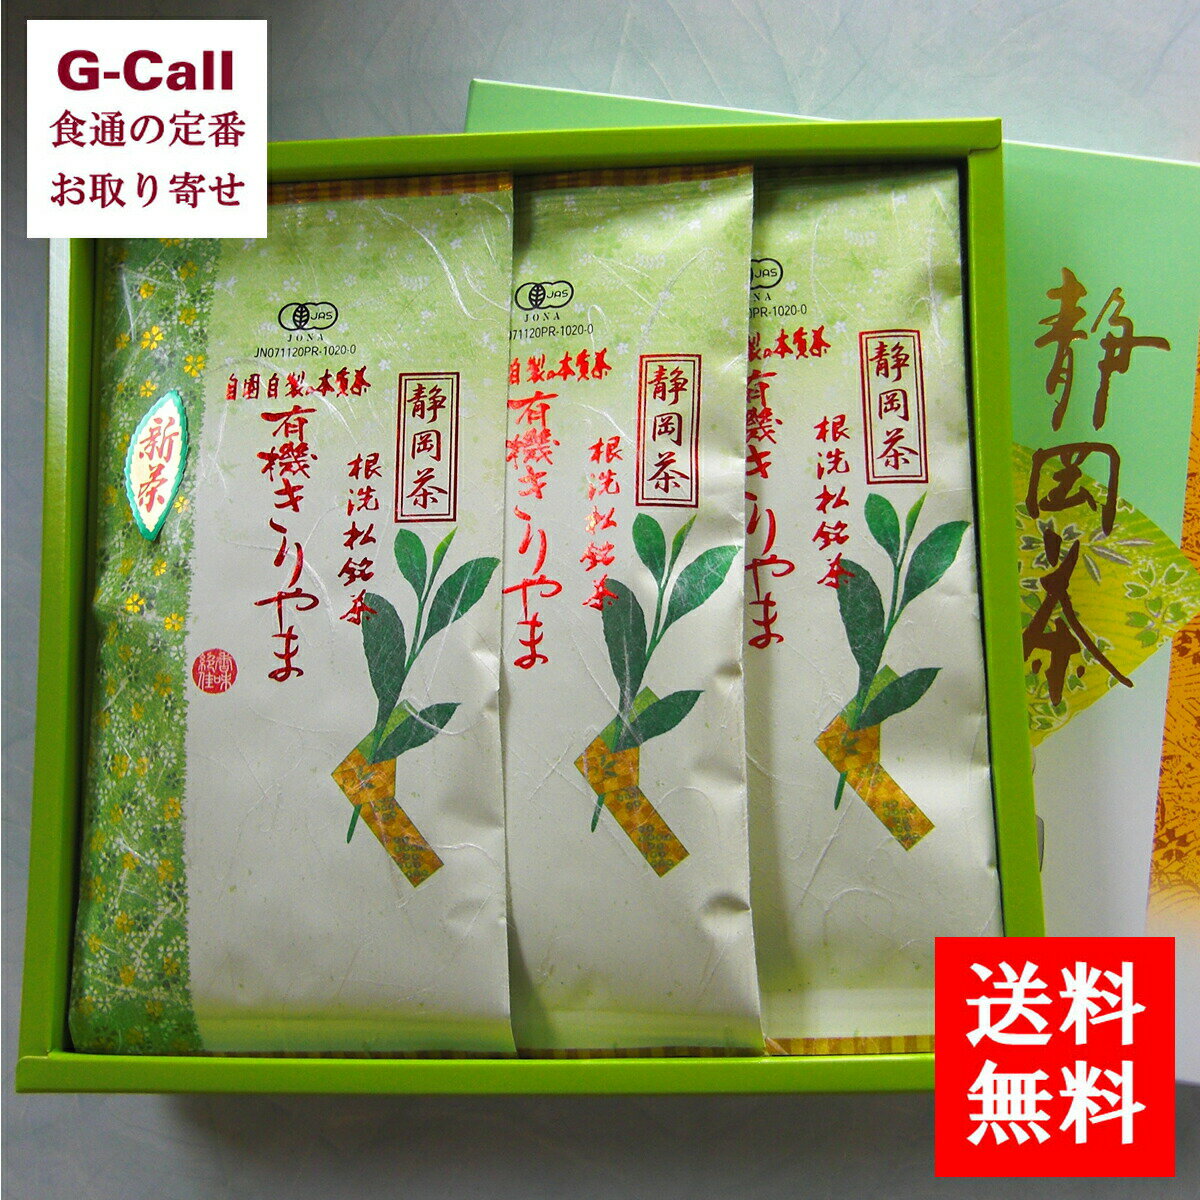 日本農産 有機茶 きりやま 100g 3袋 送料無料 静岡県 有機栽培 根洗松茶 JAS認定 有機 お茶 贈答用 ギフト 贈り物 プレゼント お取り寄せ